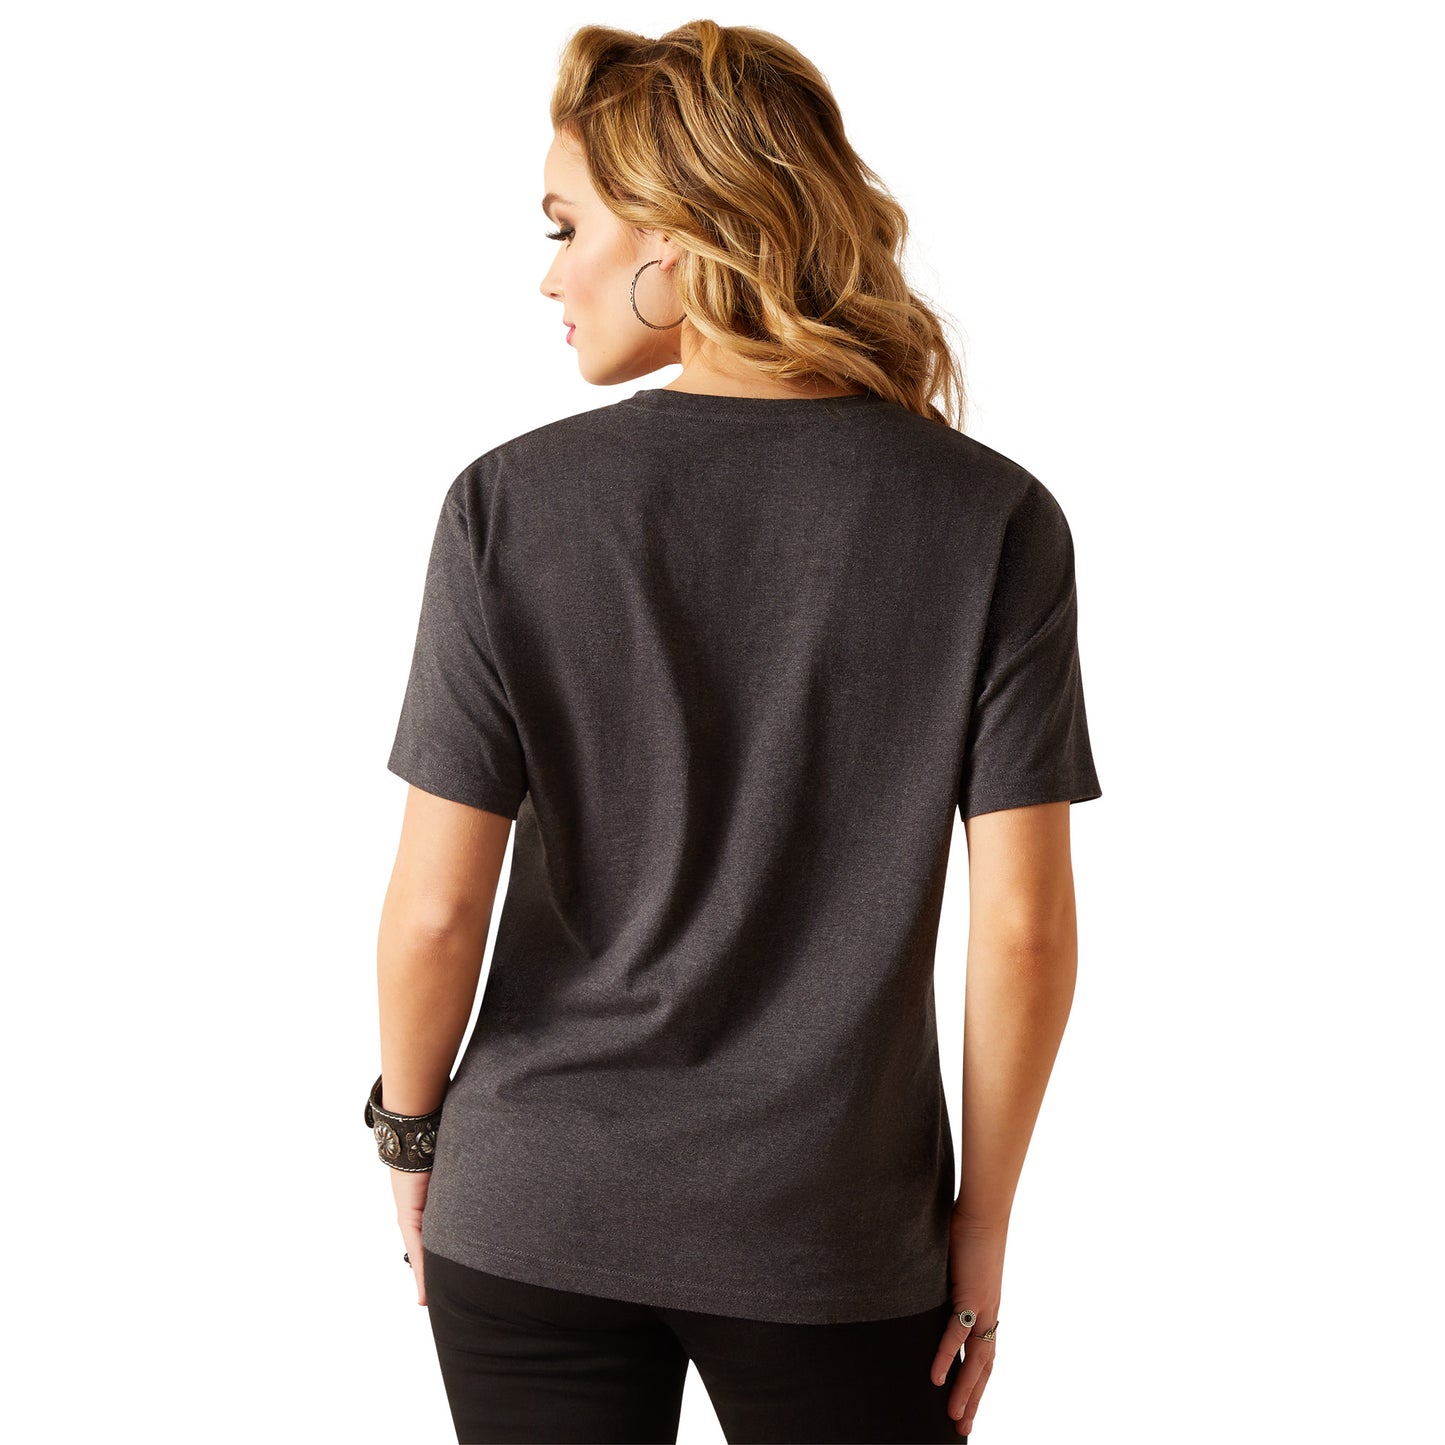 Ariat Ladies Leopard Print Shield Black Heather T-Shirt 10047403